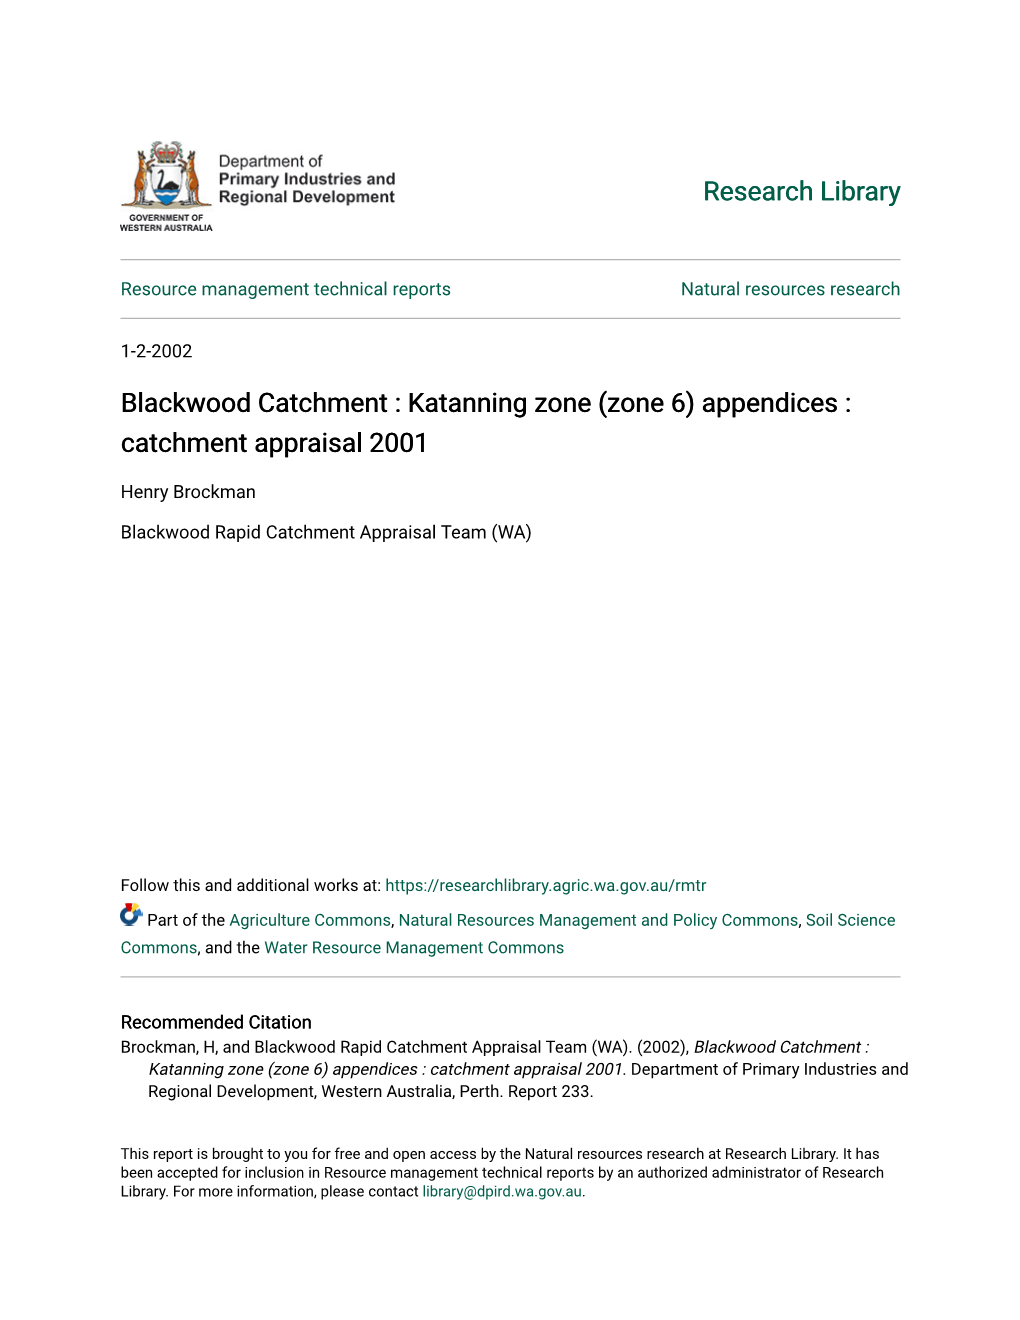 Blackwood Catchment : Katanning Zone (Zone 6) Appendices : Catchment Appraisal 2001